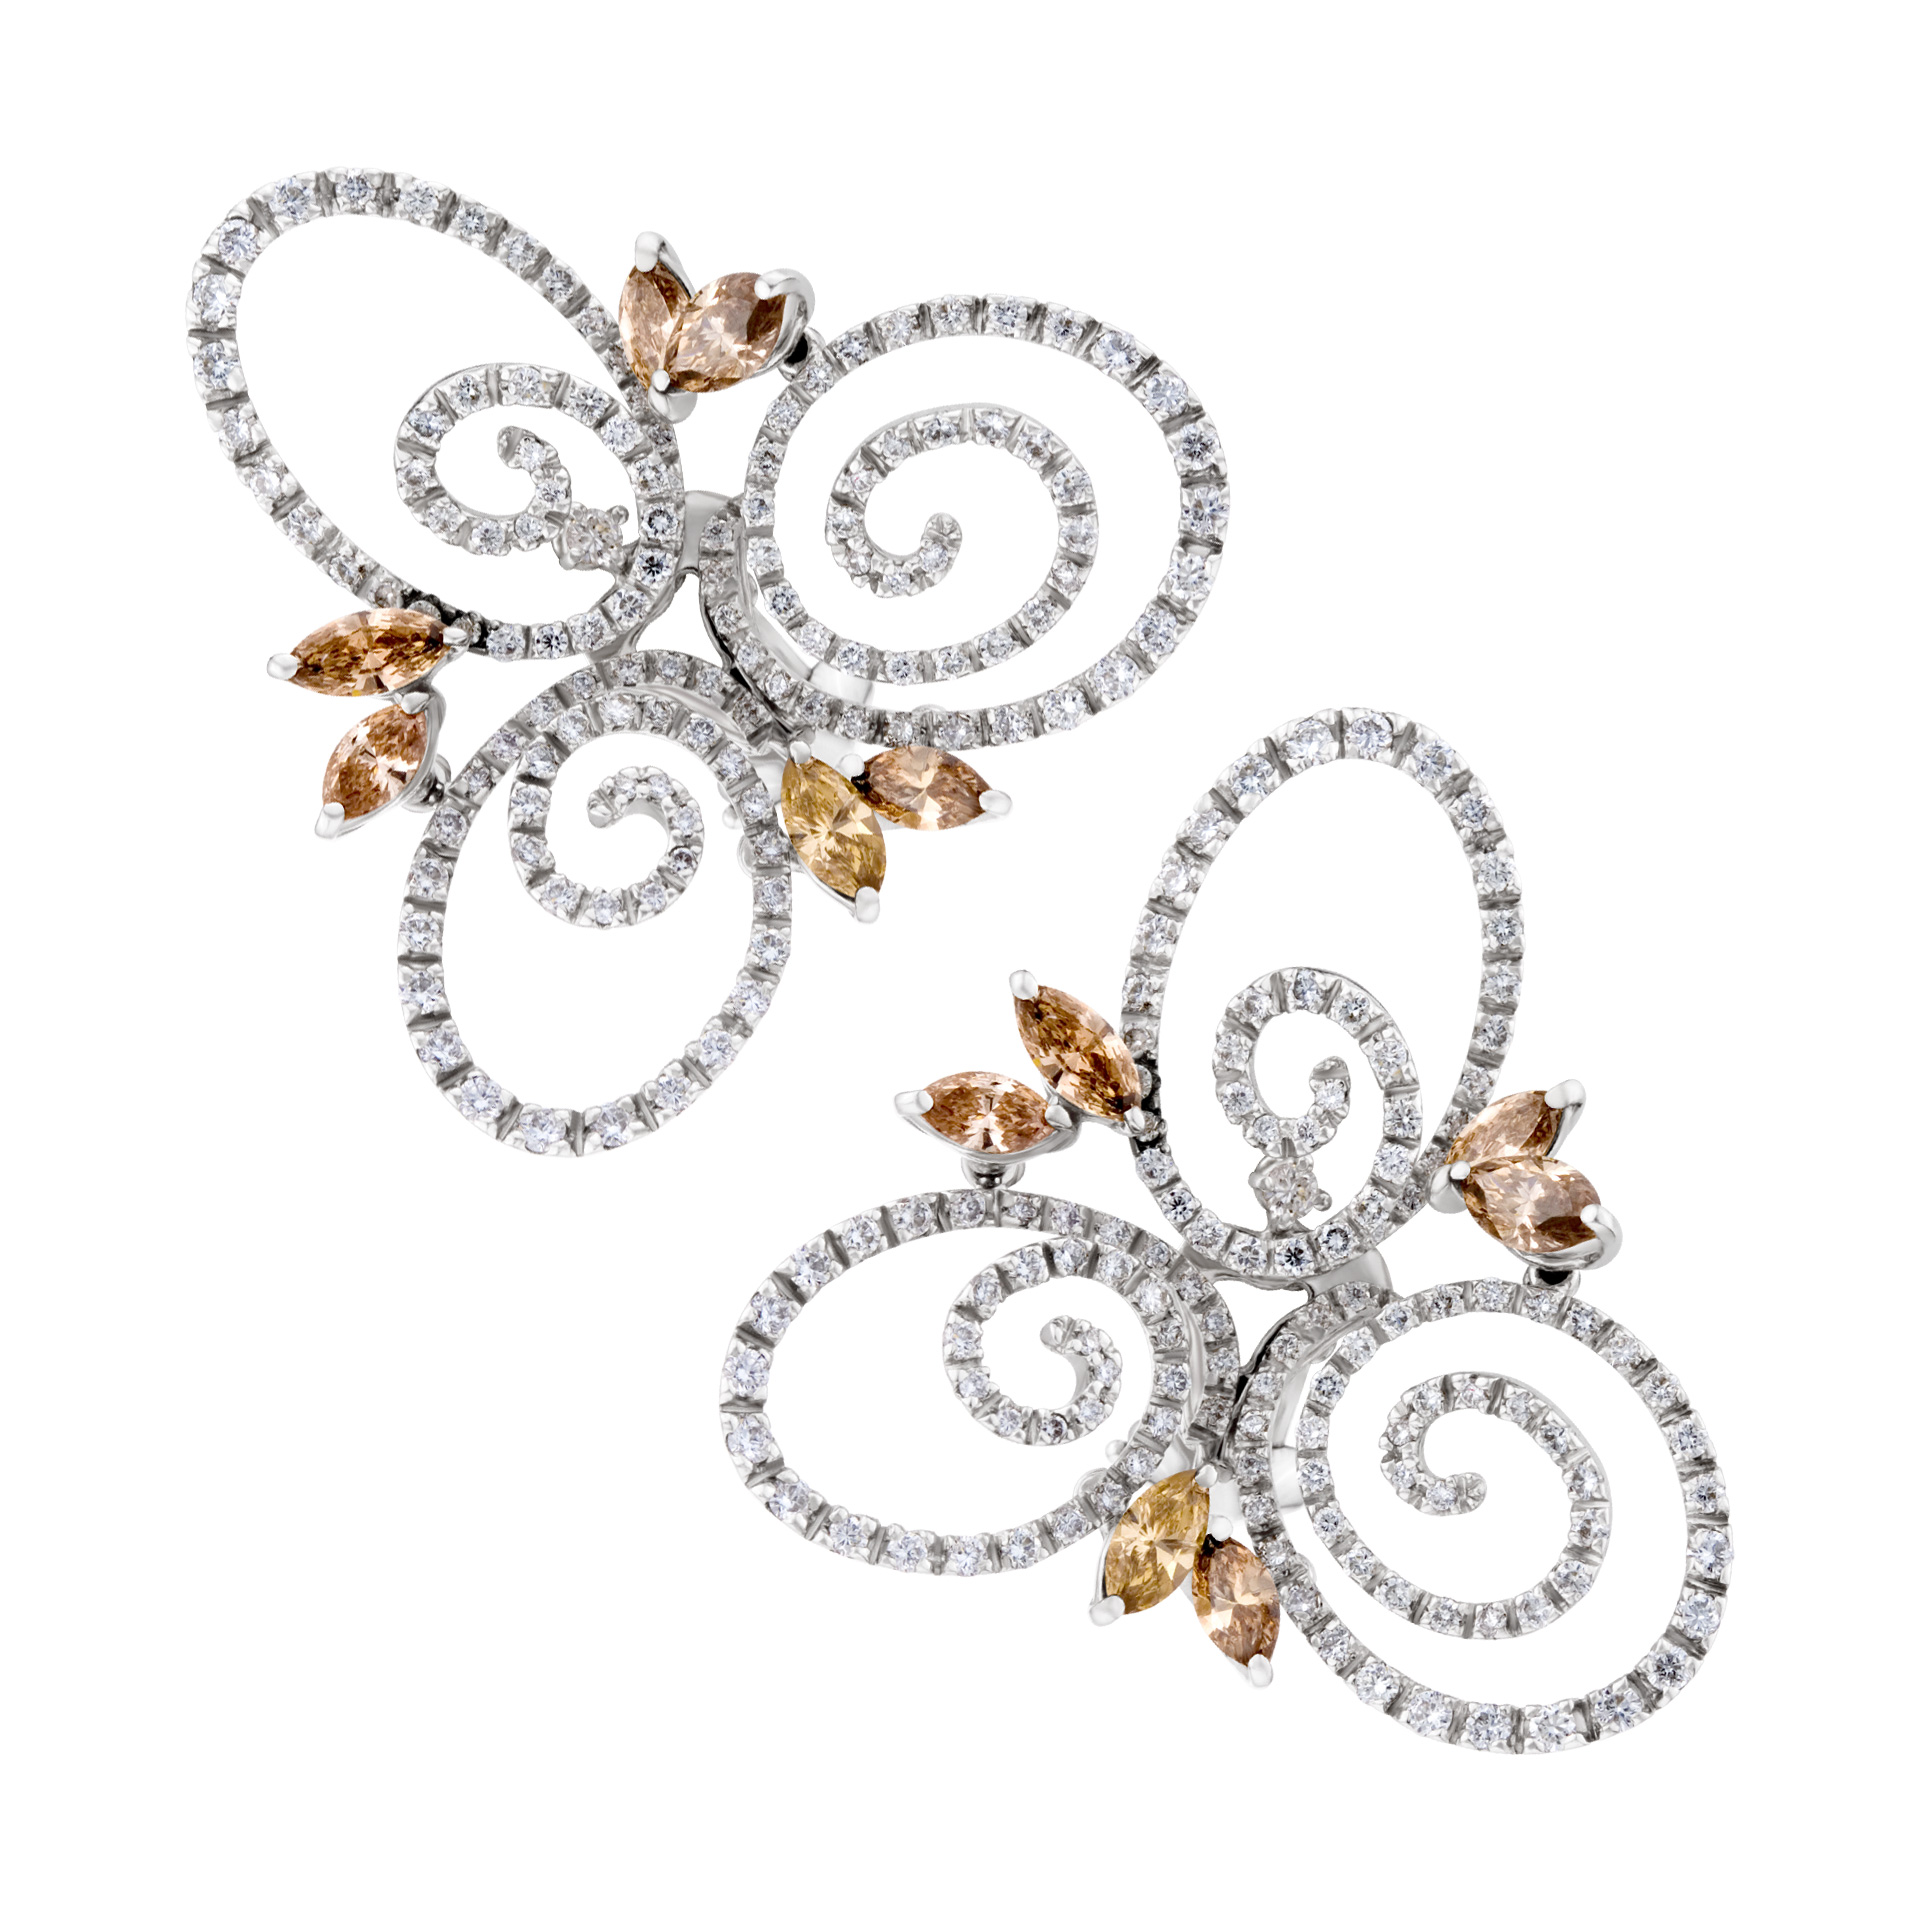 Stefan Hafner swirl earrings in 18k white gold. 4.03 cts in diamonds